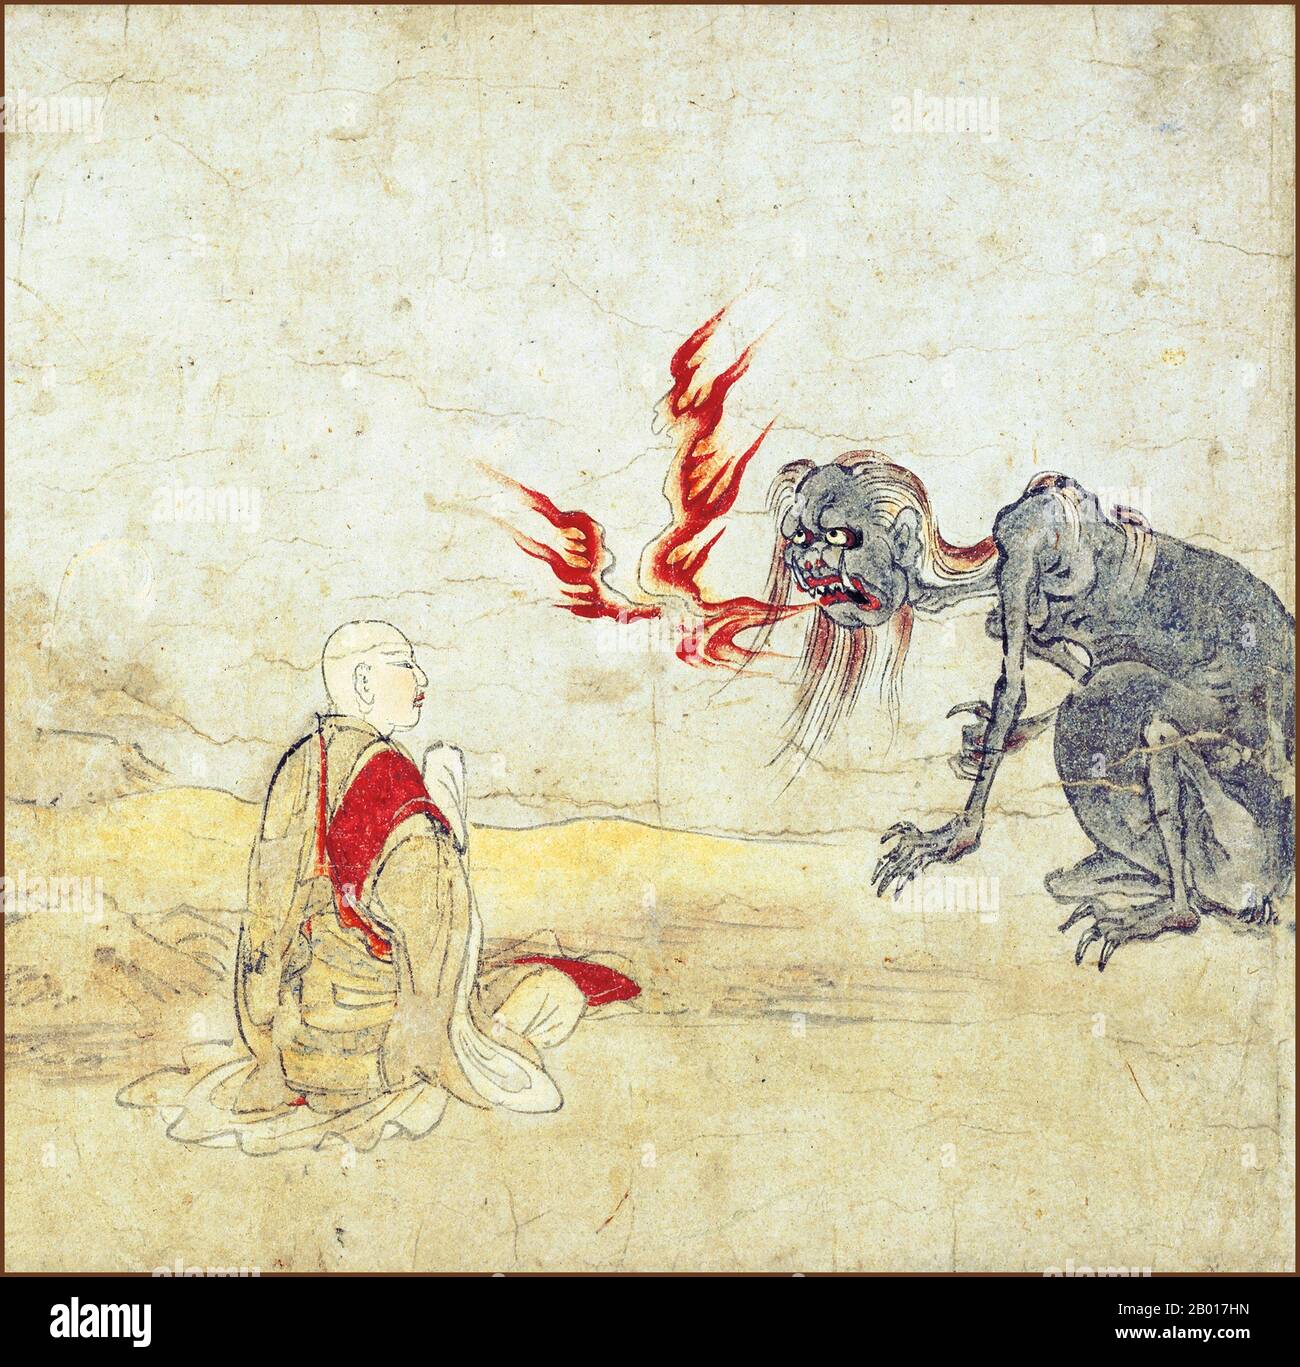 Giappone: 'Hungry Ghosts Scroll'. Dettaglio da un dipinto a grasino, fine 12th secolo. Sesta sezione dell'Hungry Ghosts Scroll situata presso il Museo Nazionale di Kyoto. Il rotolo raffigura il mondo dei fantasmi affamati, uno dei sei reami del Buddismo e contiene storie di salvezza dei fantasmi affamati. Questa particolare sezione mostra Ananda, un discepolo di Shakyamuni, insegnando un'incantazione per ottenere la salvezza ad un fantasma affamato che continuamente sbanda le fiamme dalla sua bocca. Foto Stock